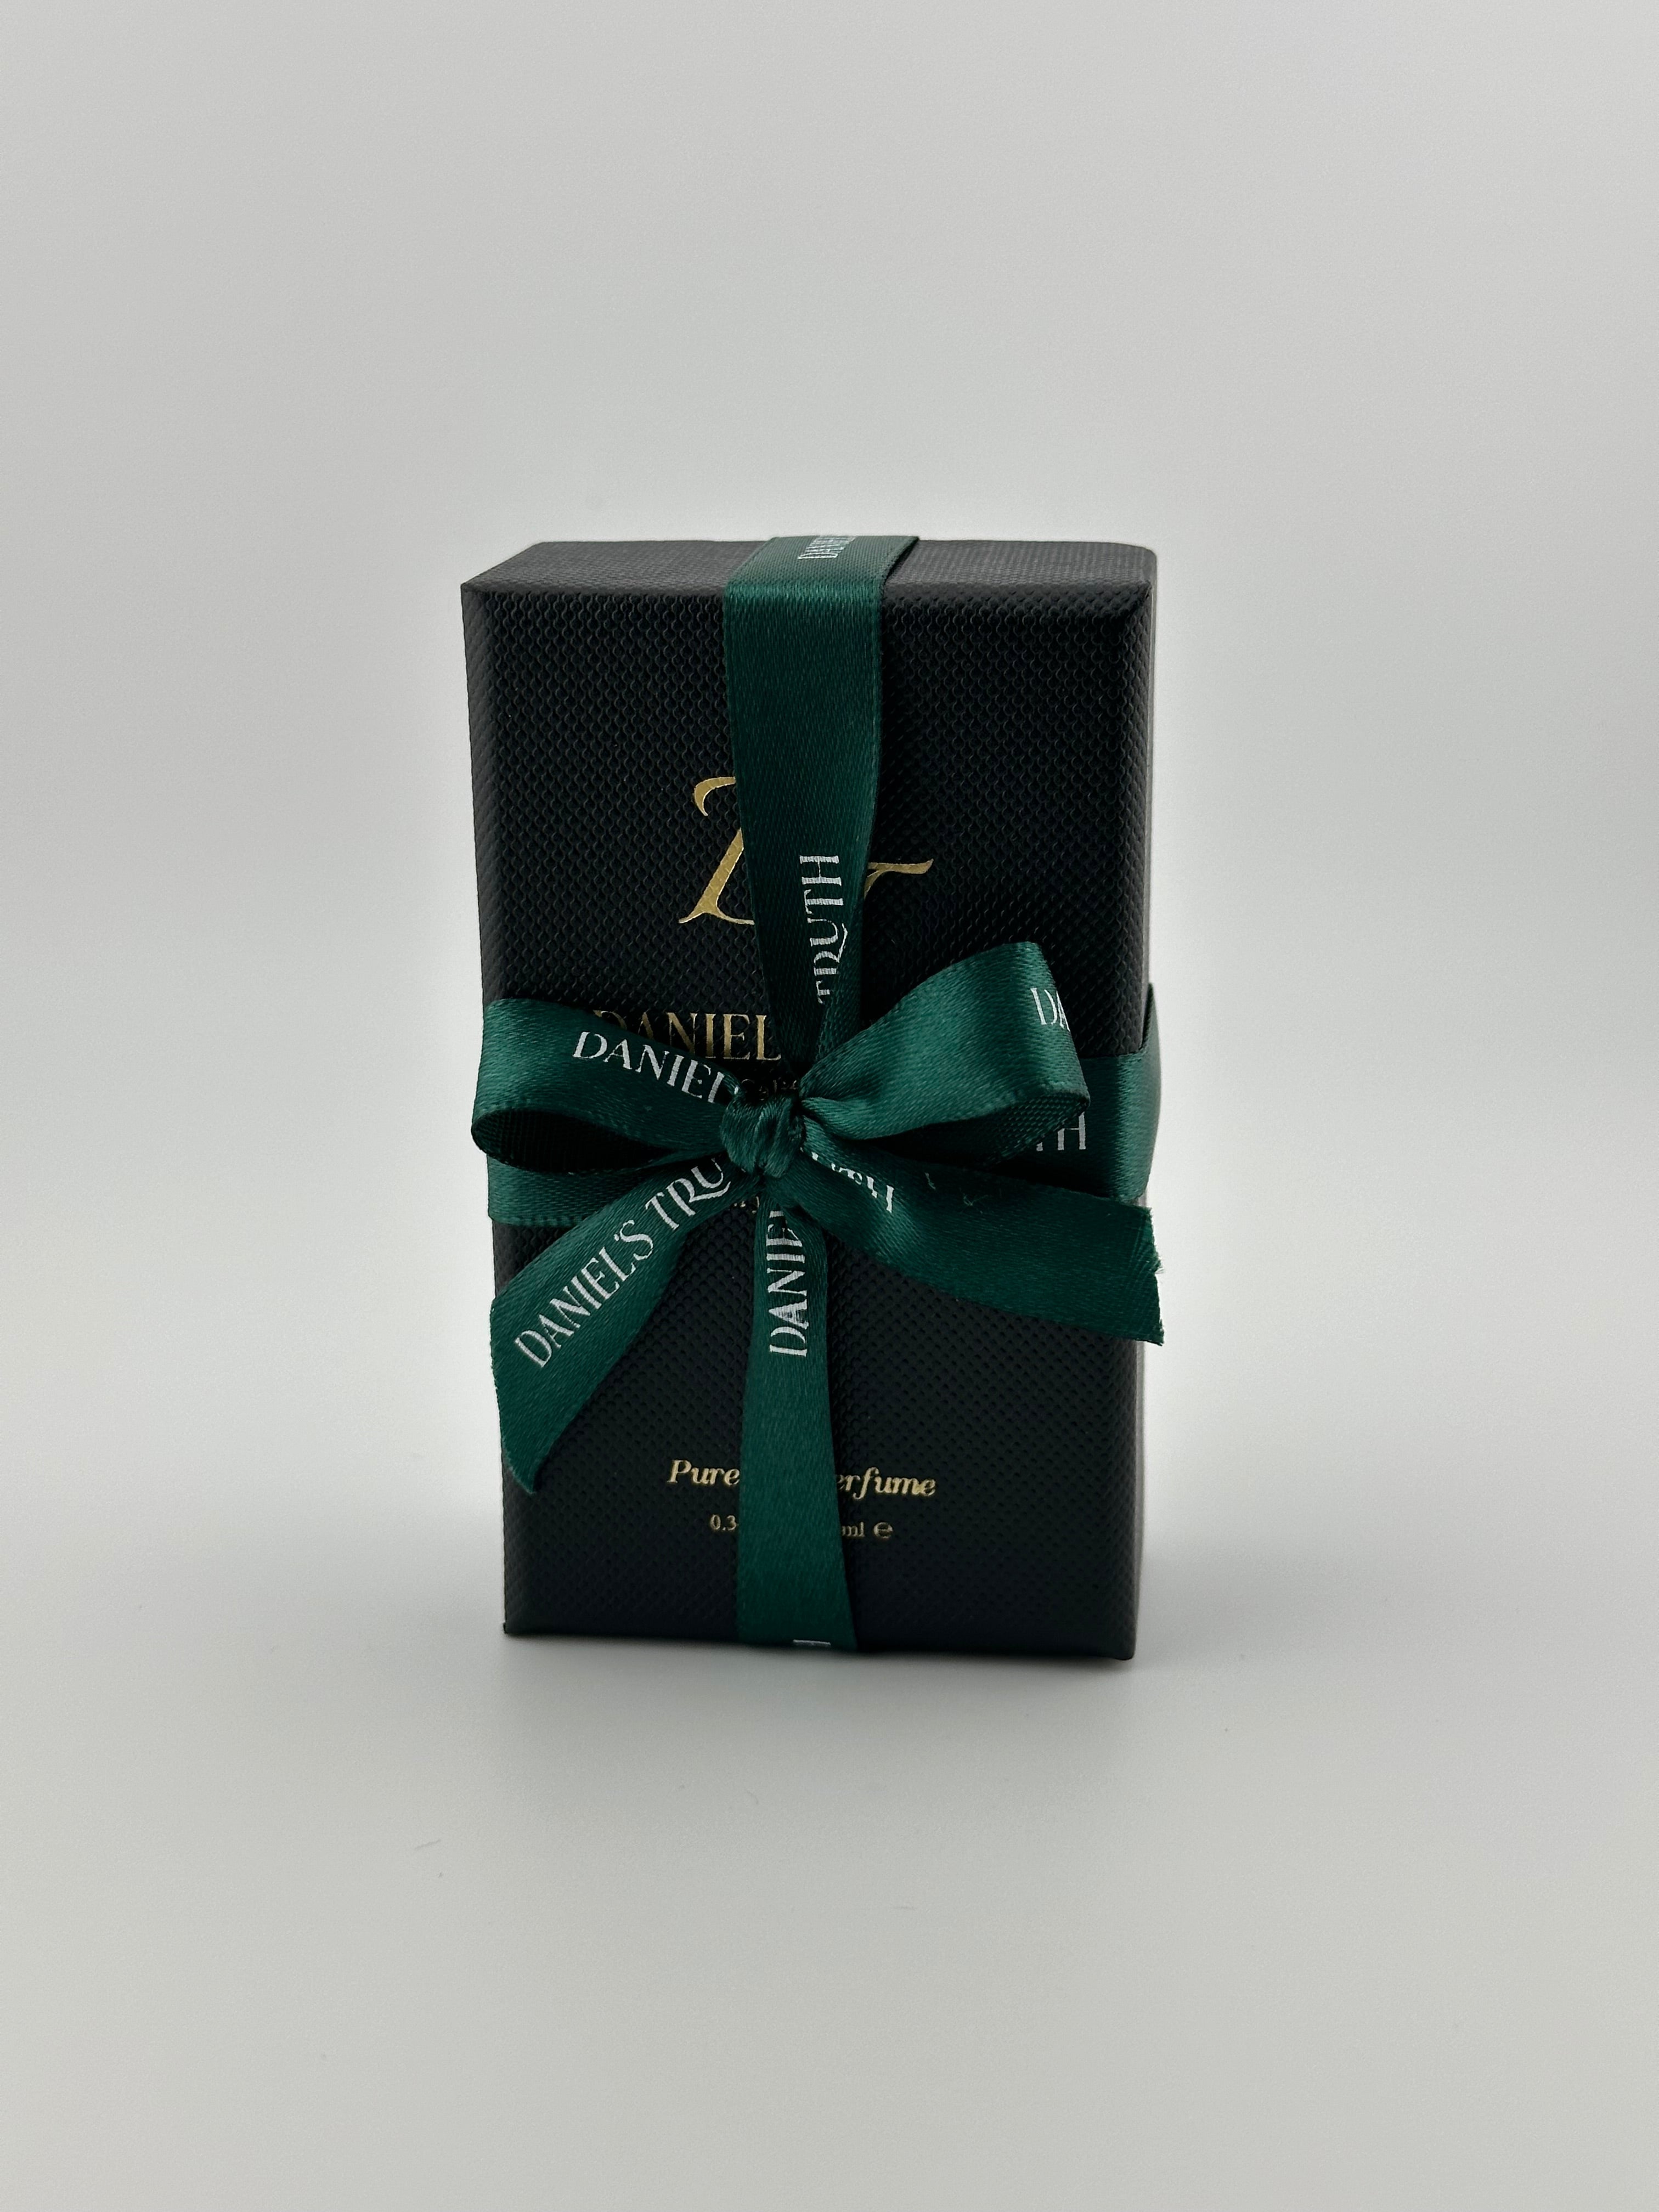 10mlOilperfume Box